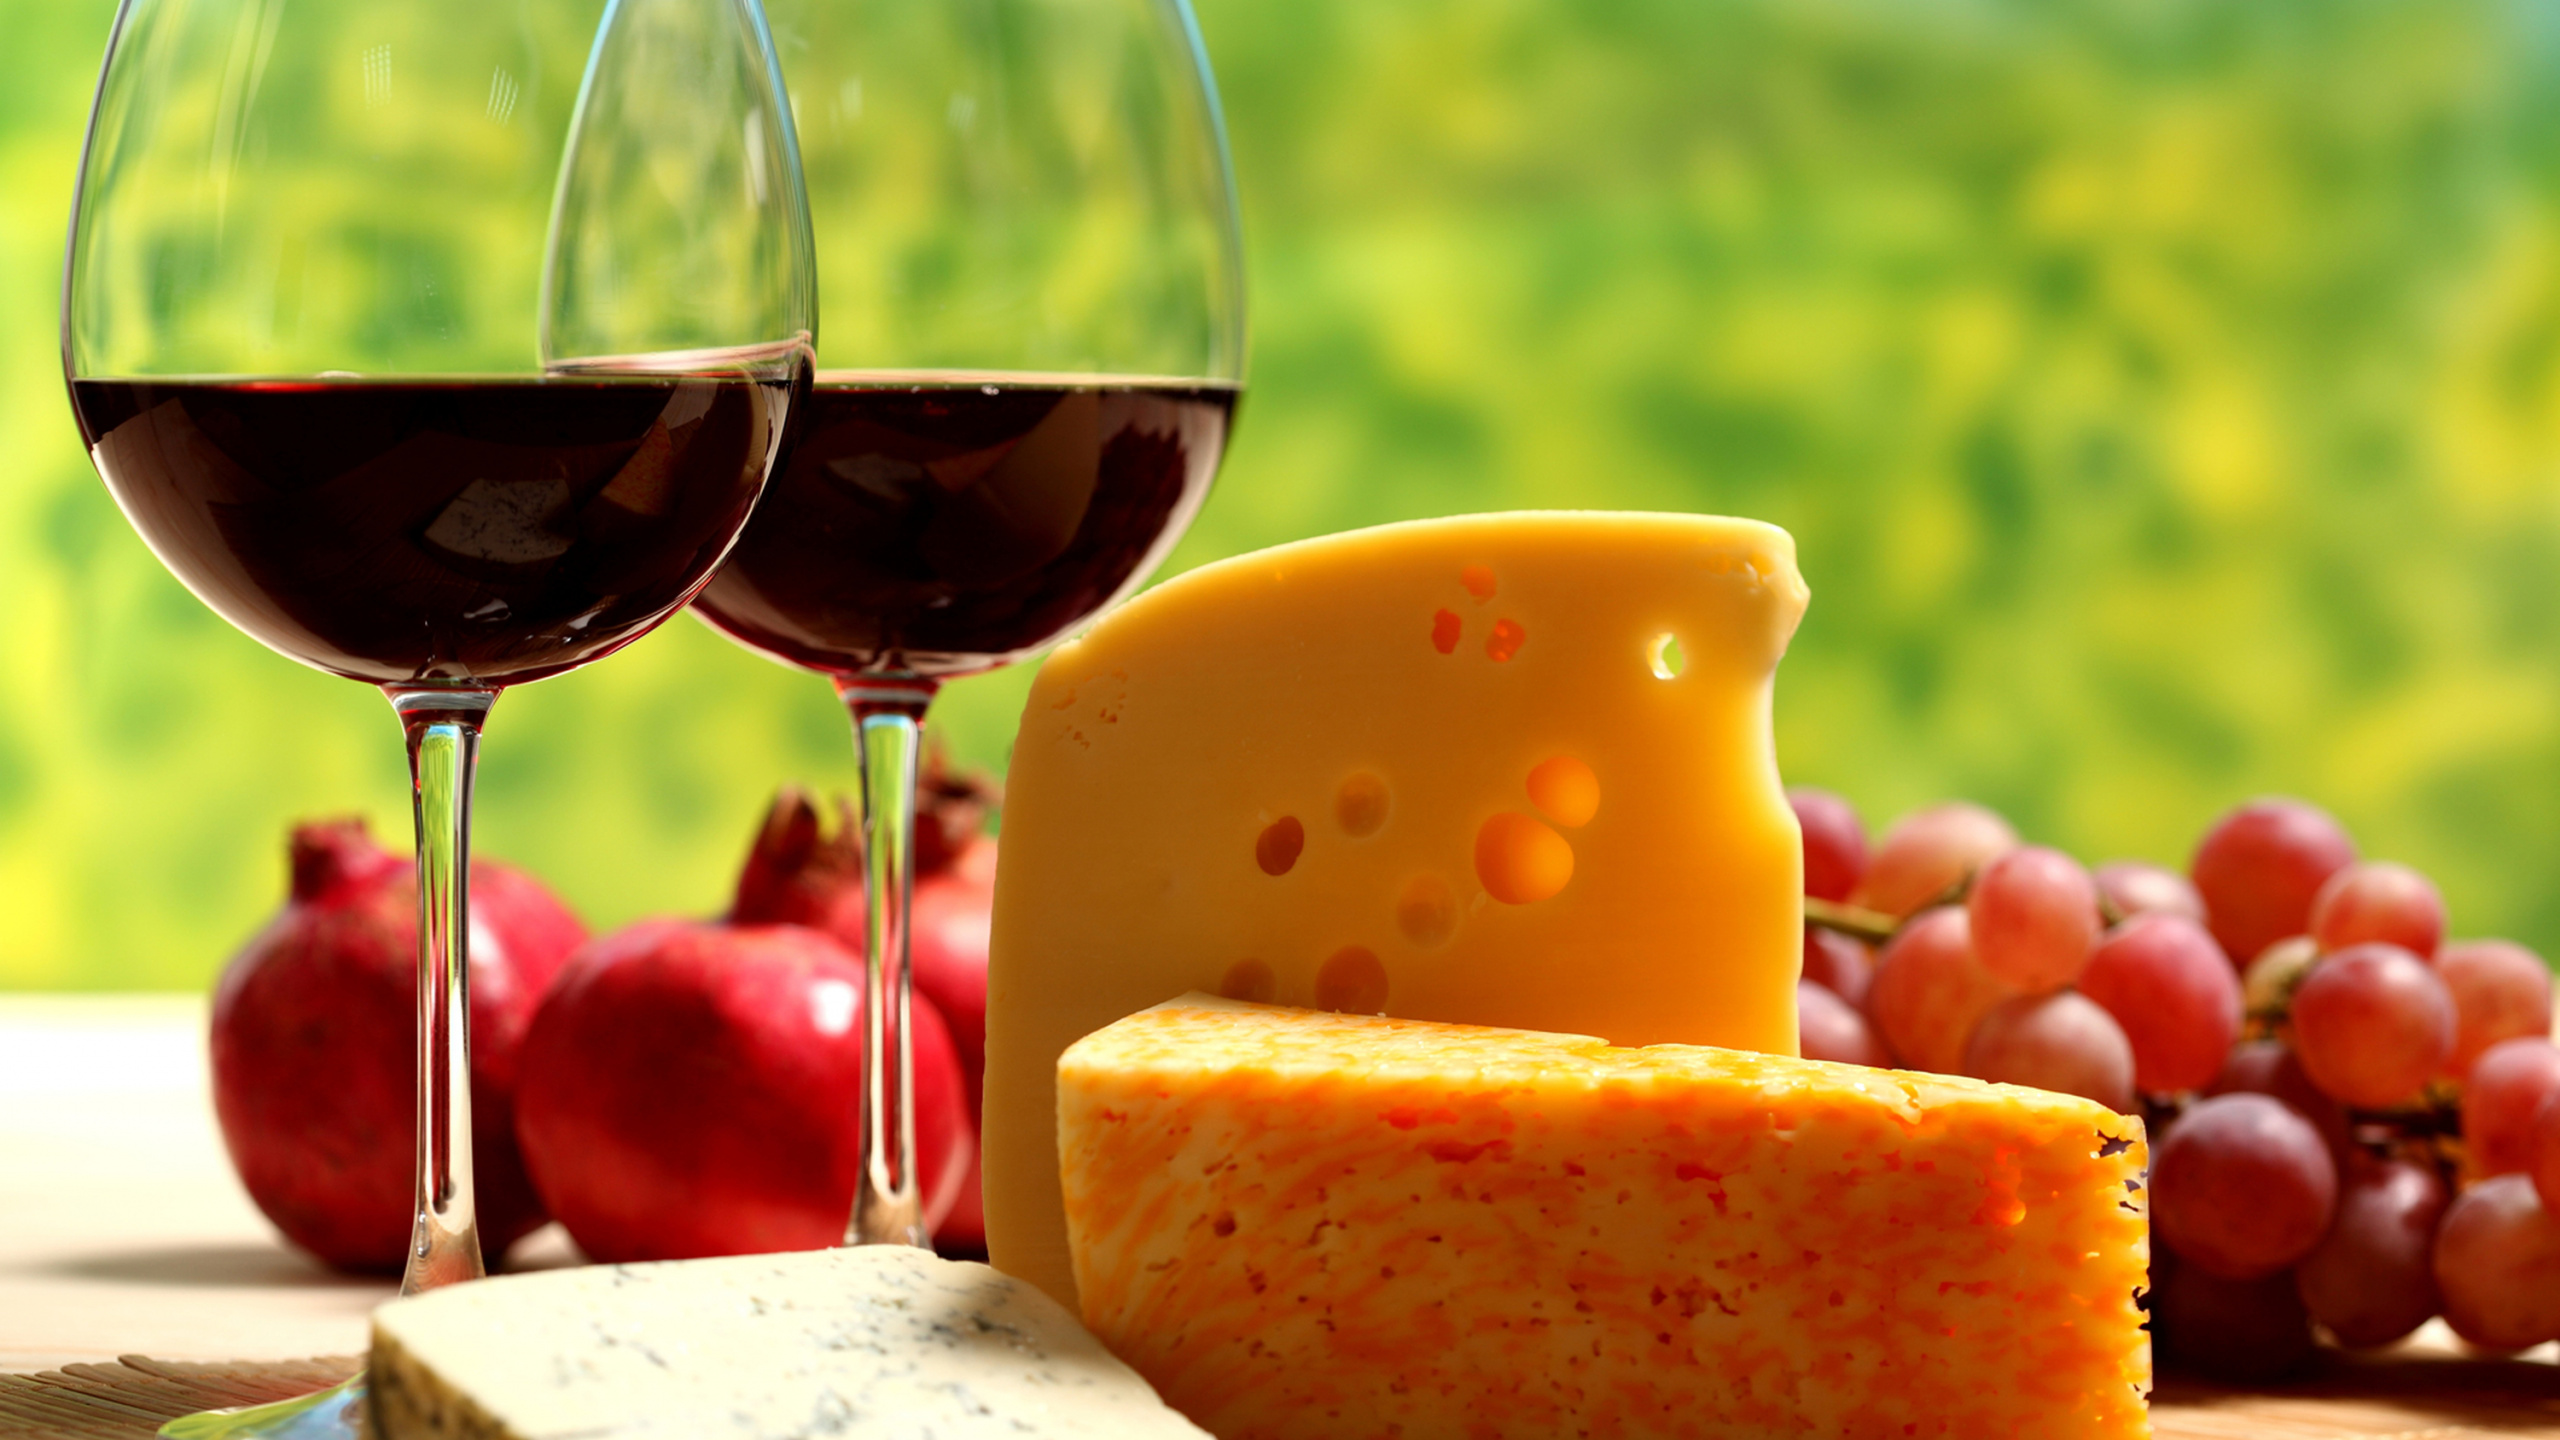 葡萄酒, 红葡萄酒, 奶酪, 葡萄酒杯, 食品 壁纸 2560x1440 允许